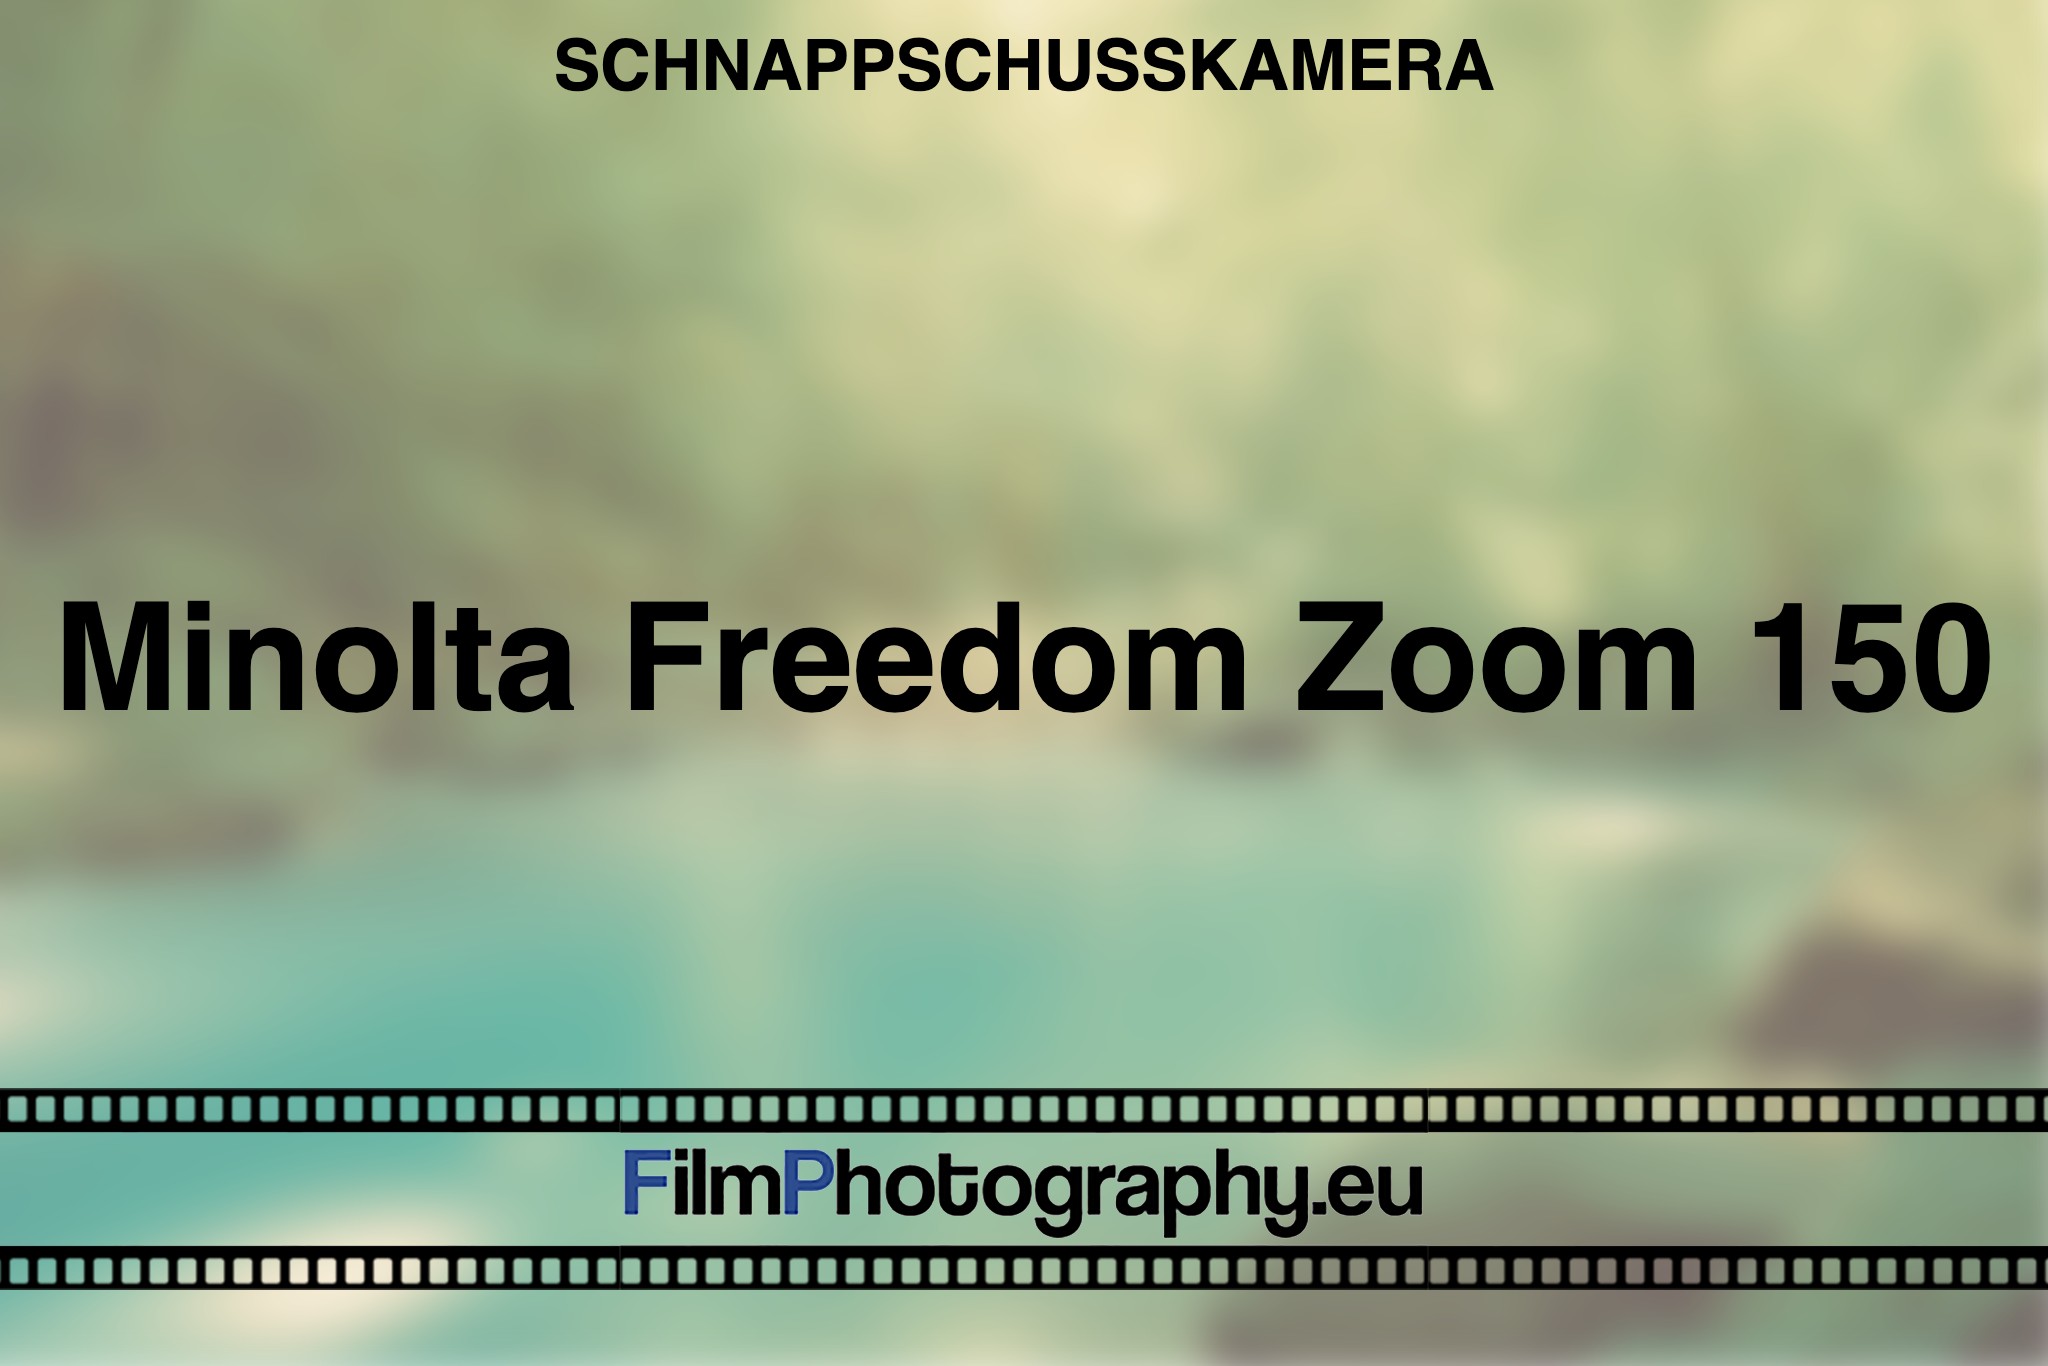 minolta-freedom-zoom-150-schnappschusskamera-bnv